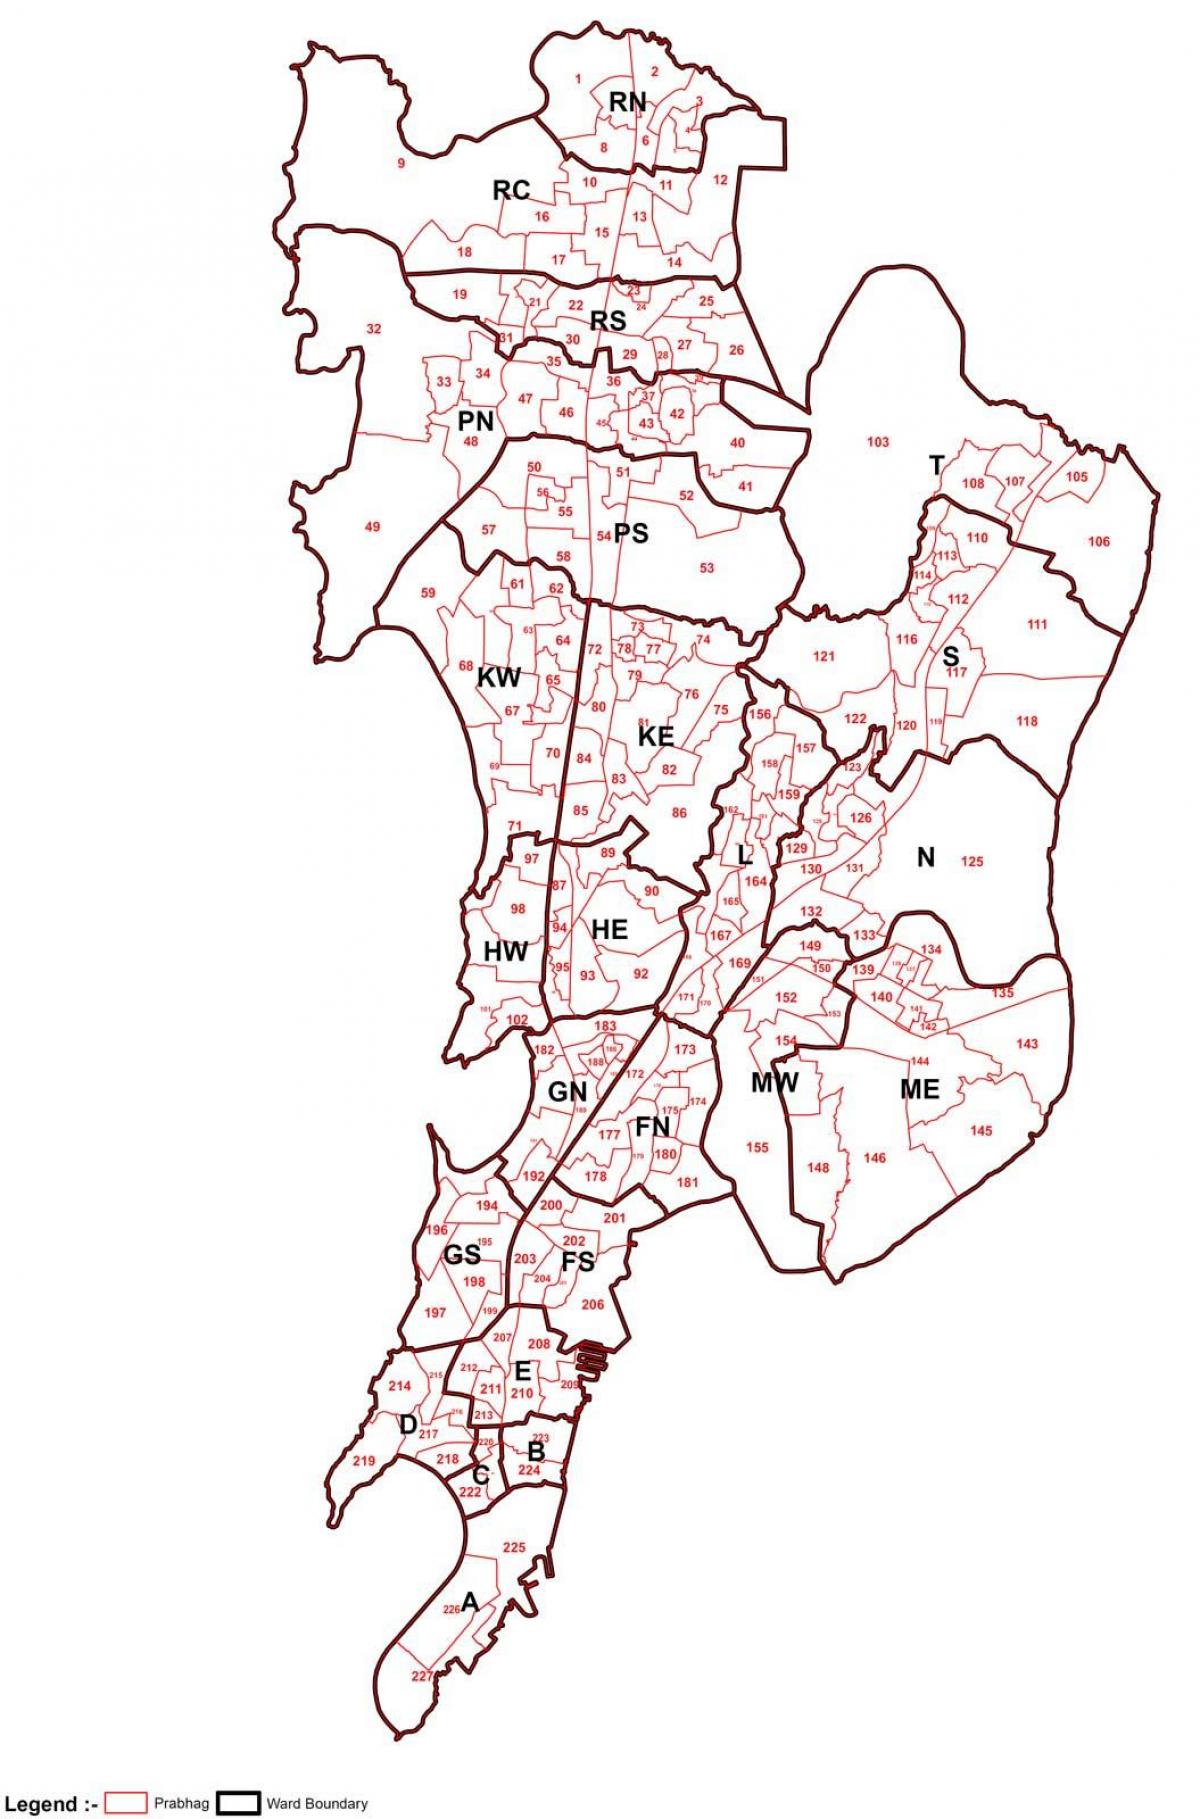 Уорд картата на Мумбай